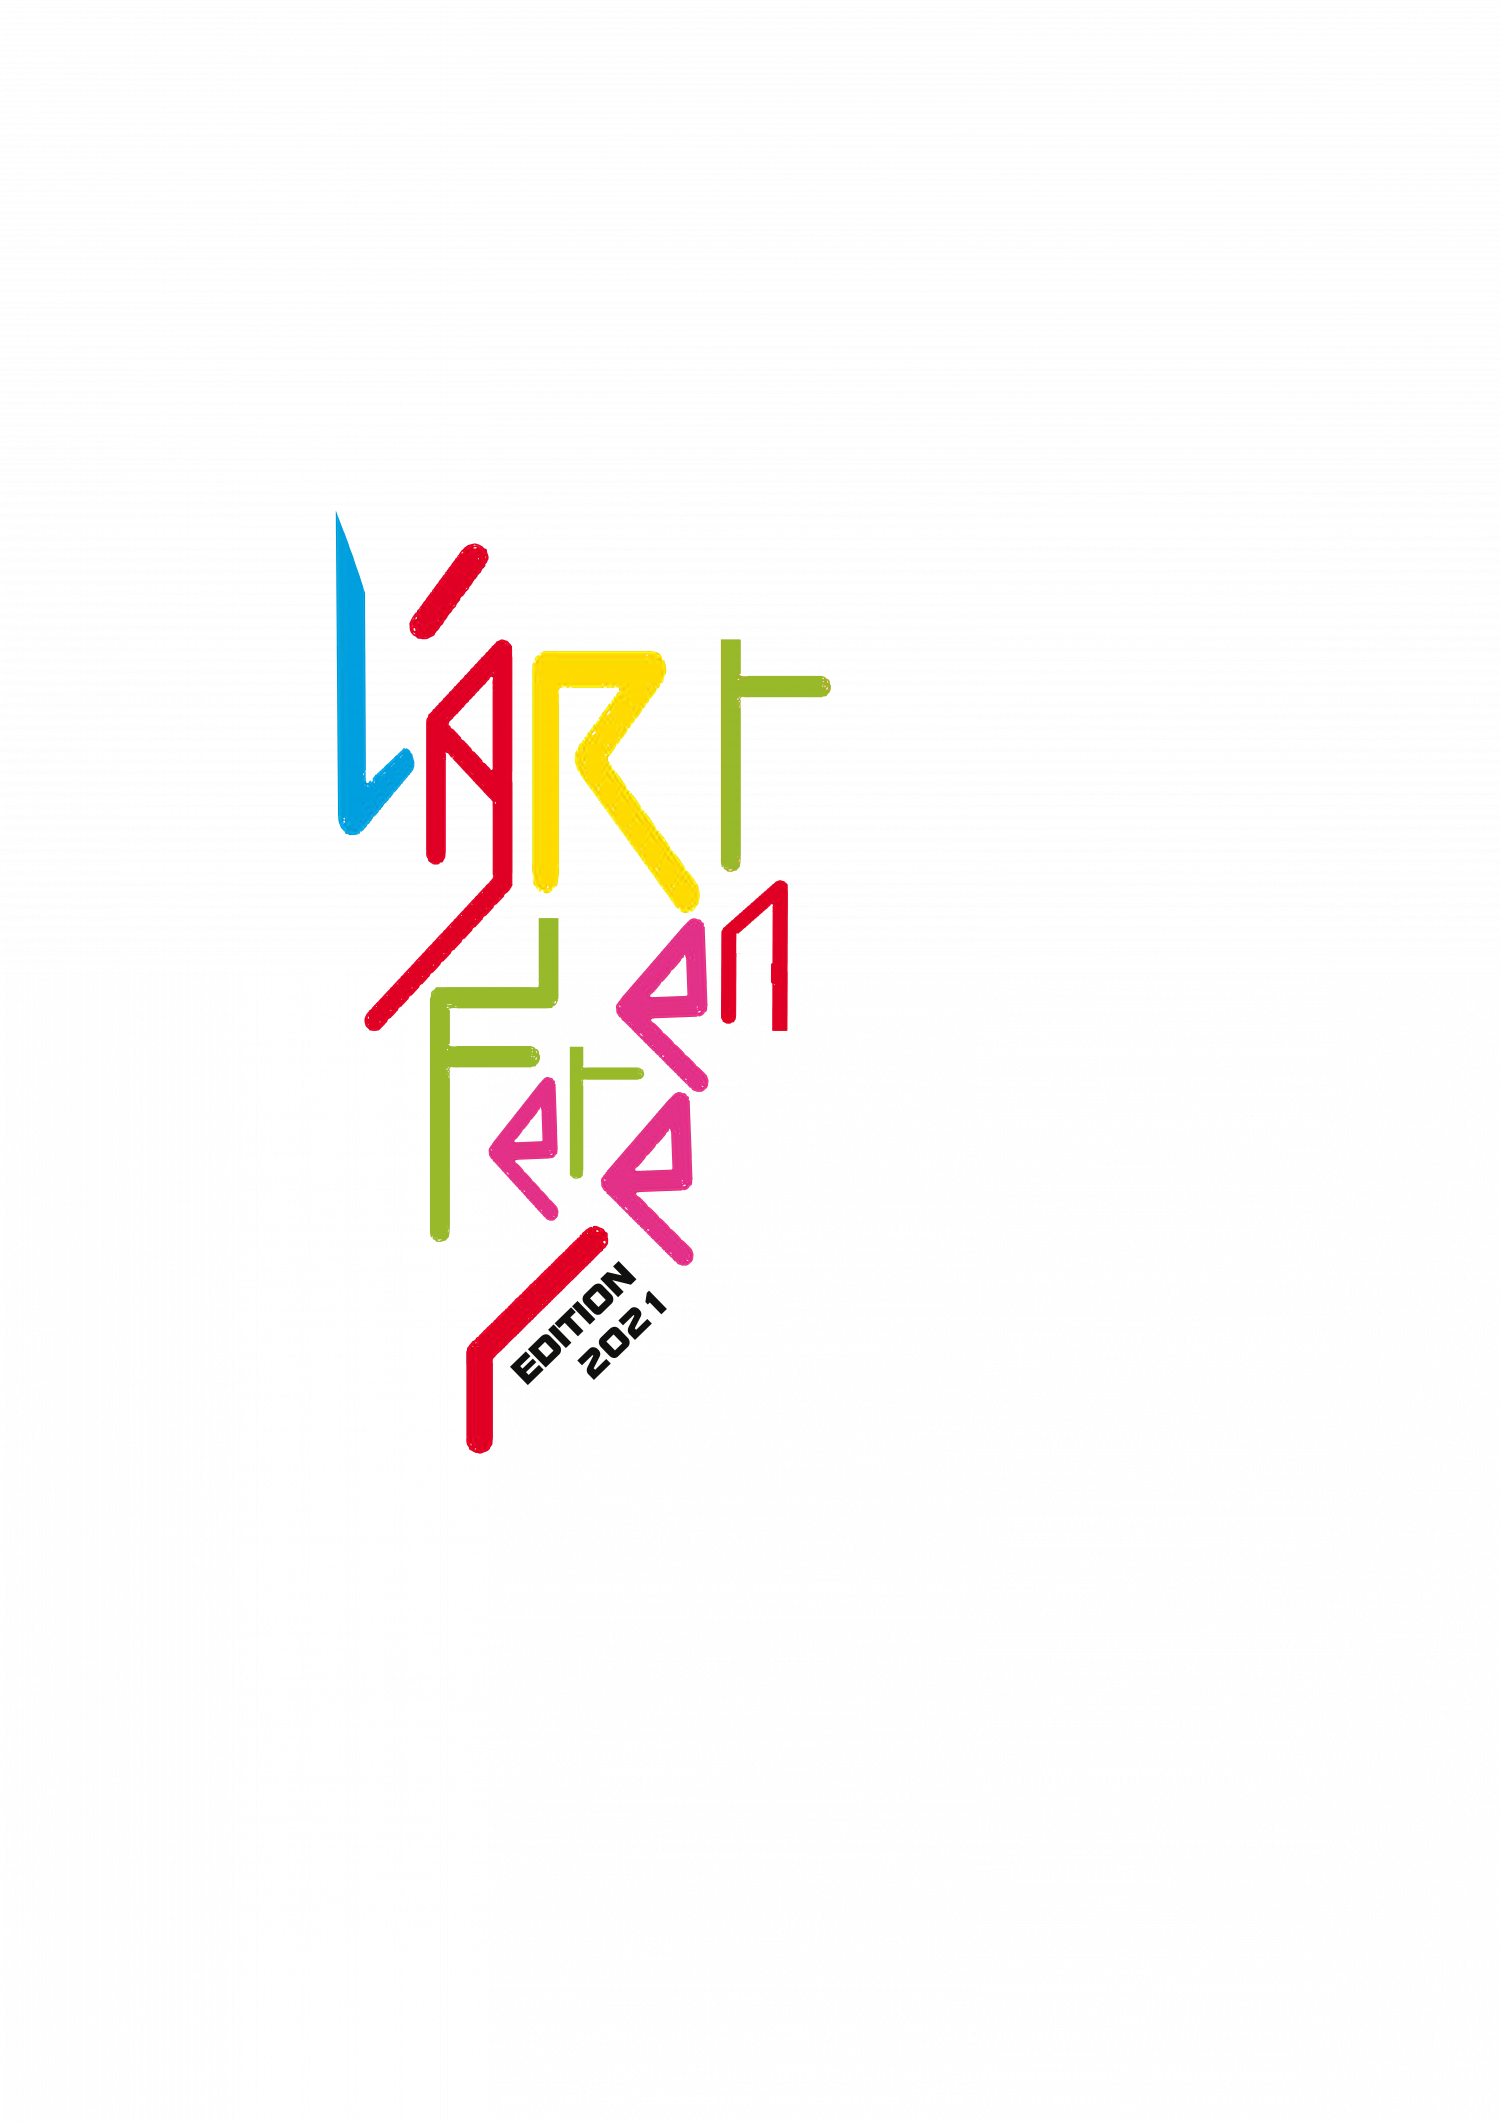 Le logo de l'édition 2021 de L'art en fête